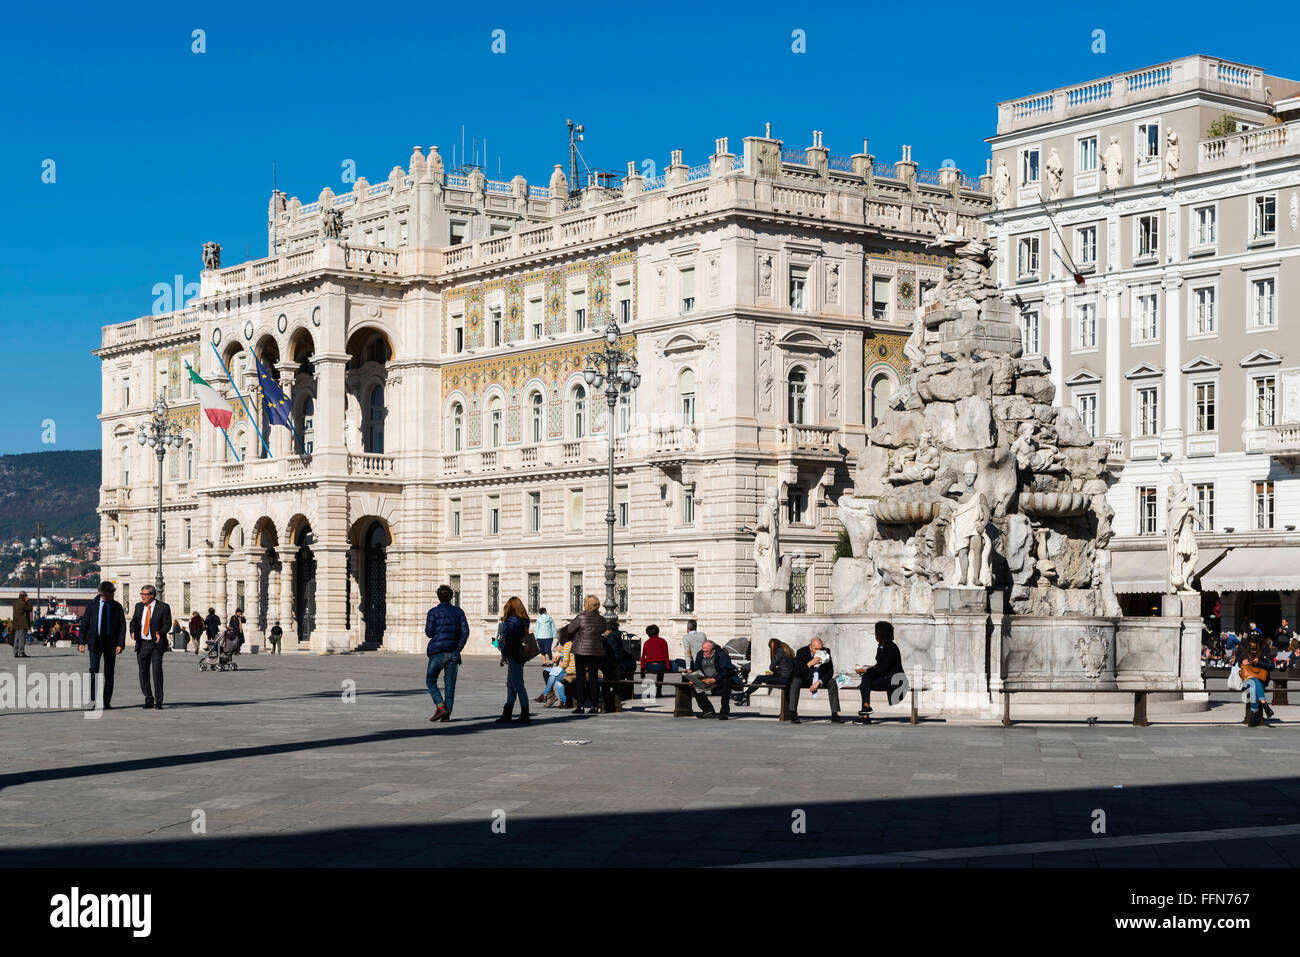 Piazza Unita d'Italia square dans le centre-ville de Trieste, Italie, Europe Banque D'Images